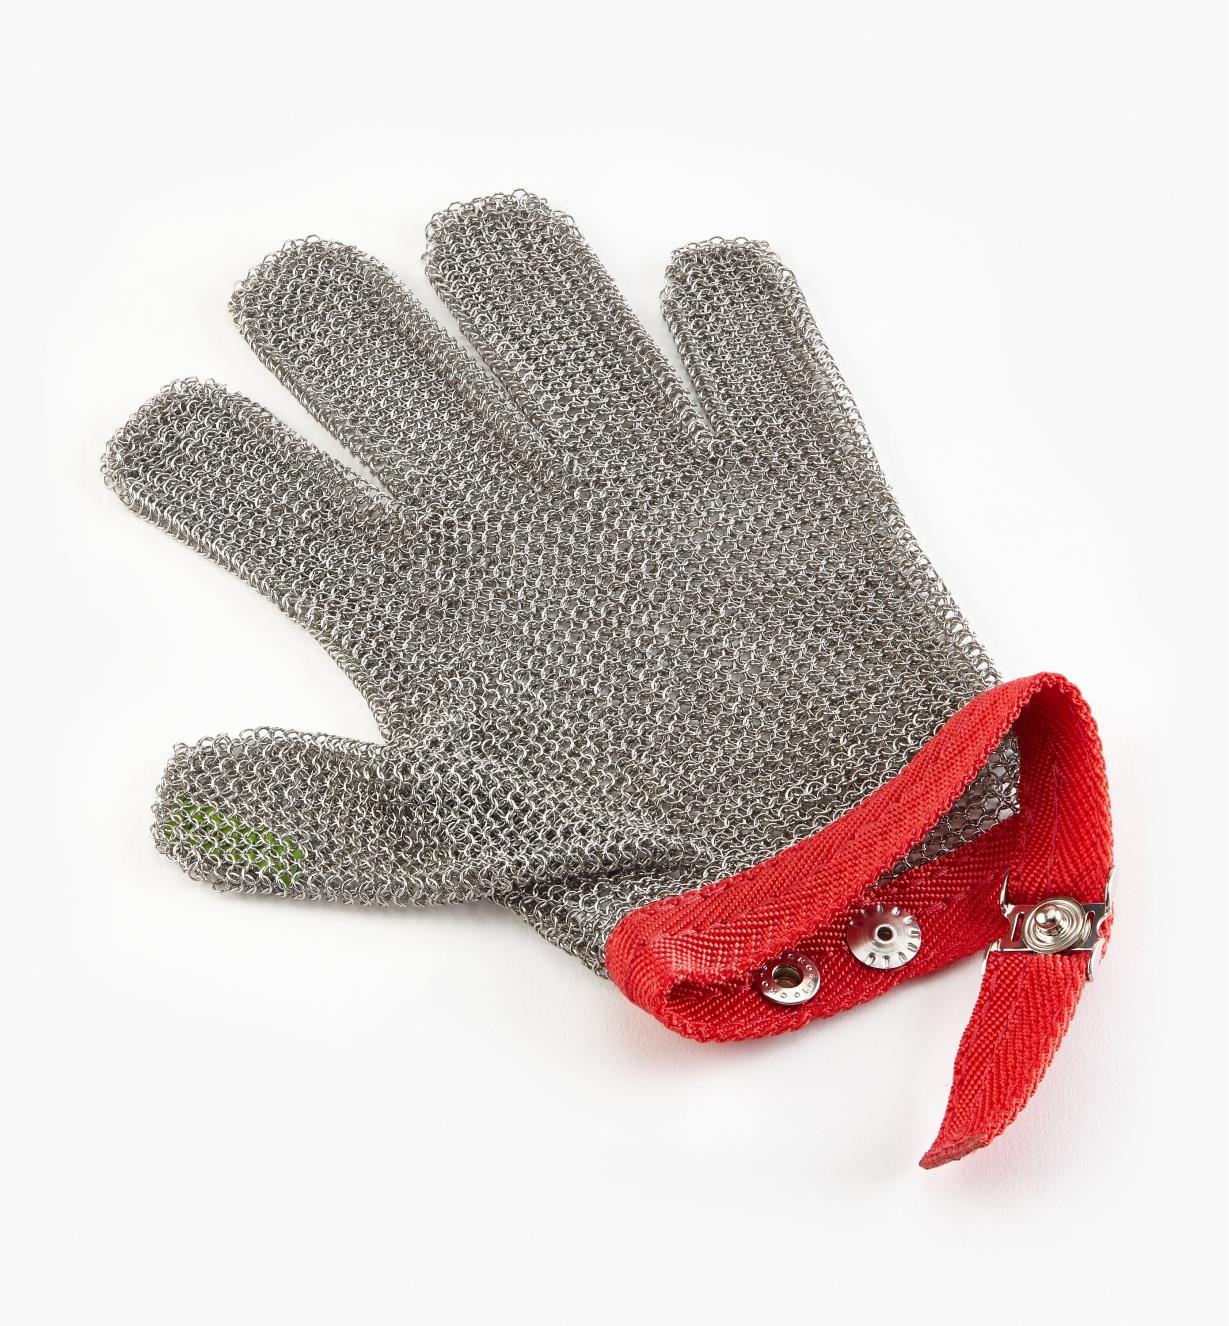 Chain Mail Glove, single